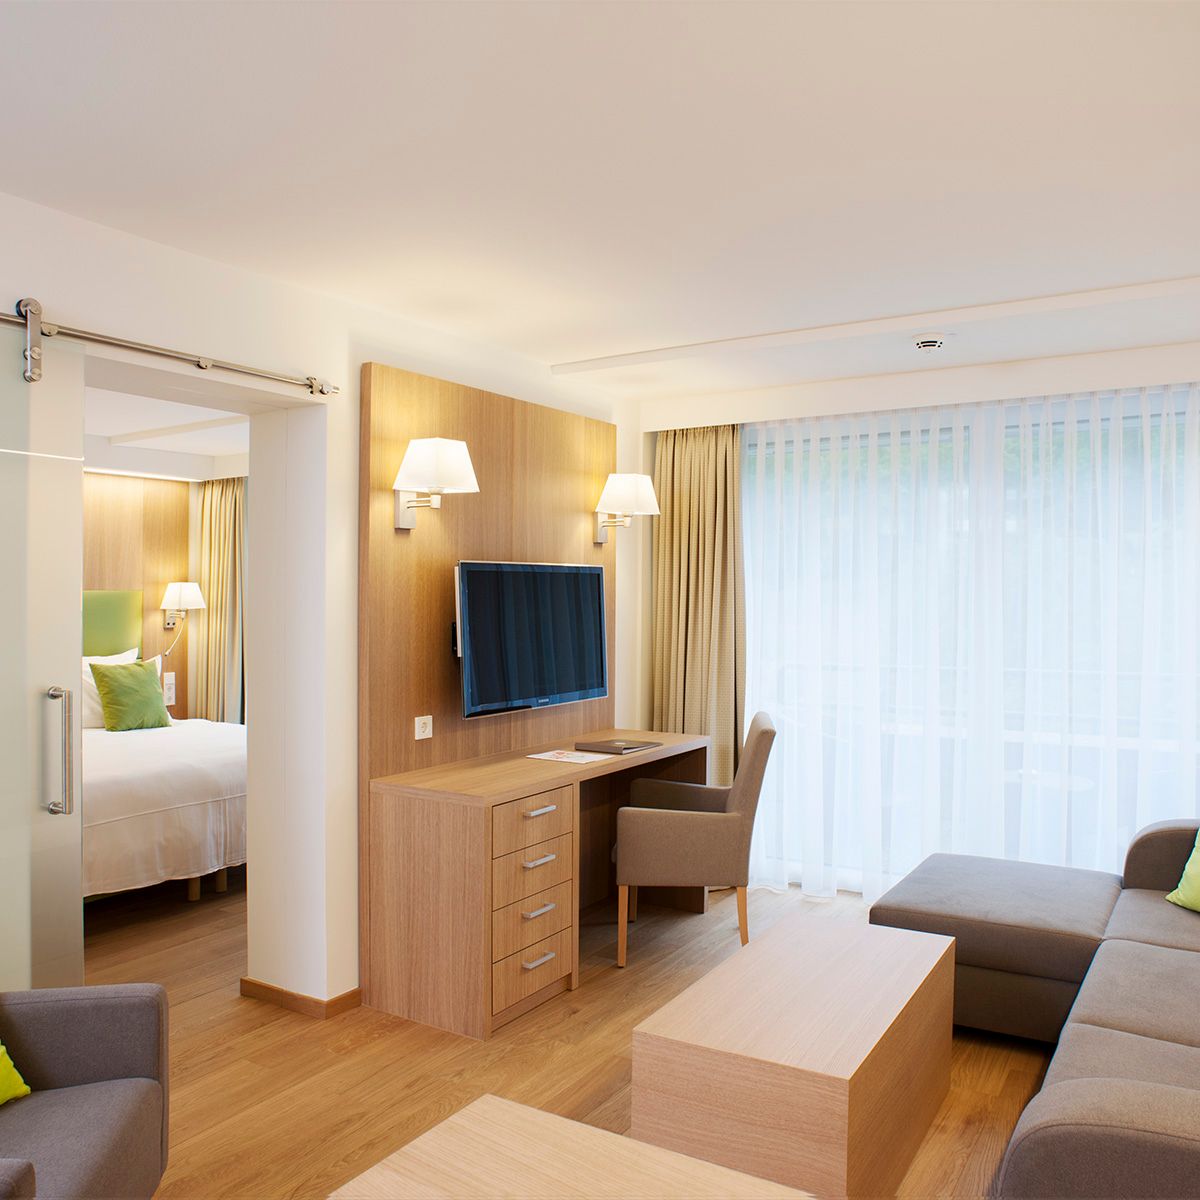 MDT_HOTEL_Mondorf Parc Hotel - Suite Printemps_2015_32_1200x1200